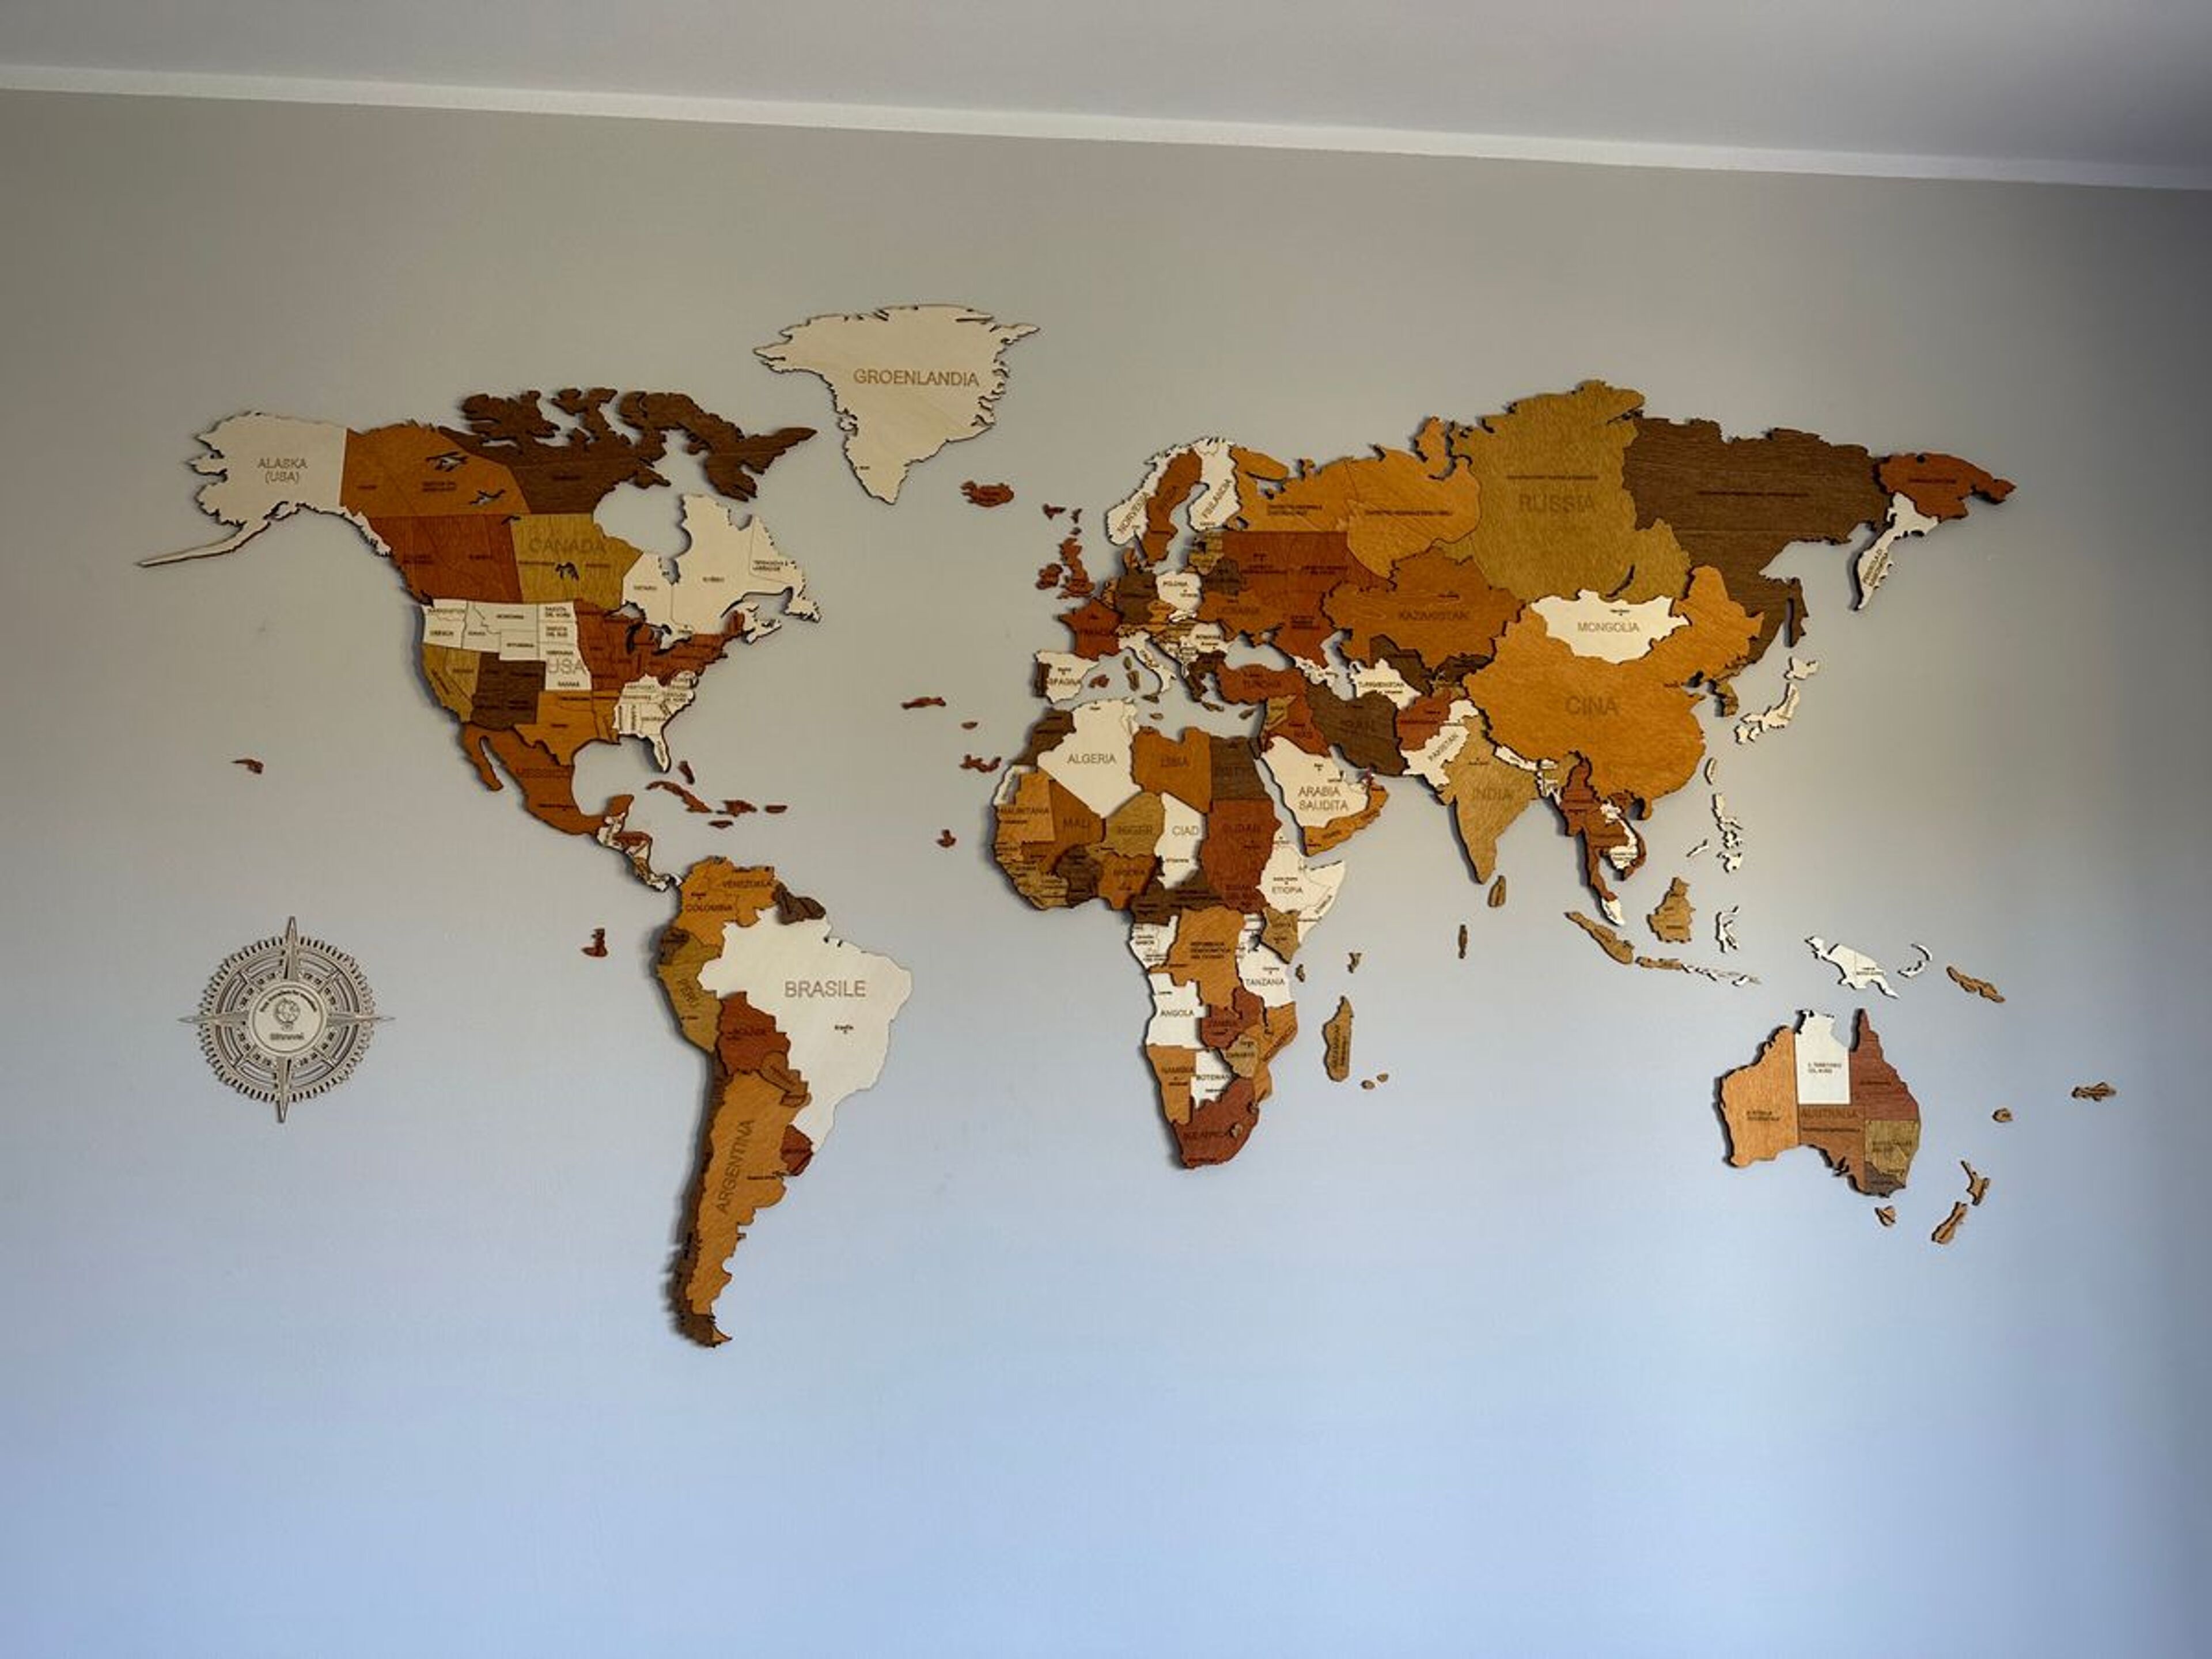 Avis pour Carte du monde en bois - décoration murale - image de Marco Chiola